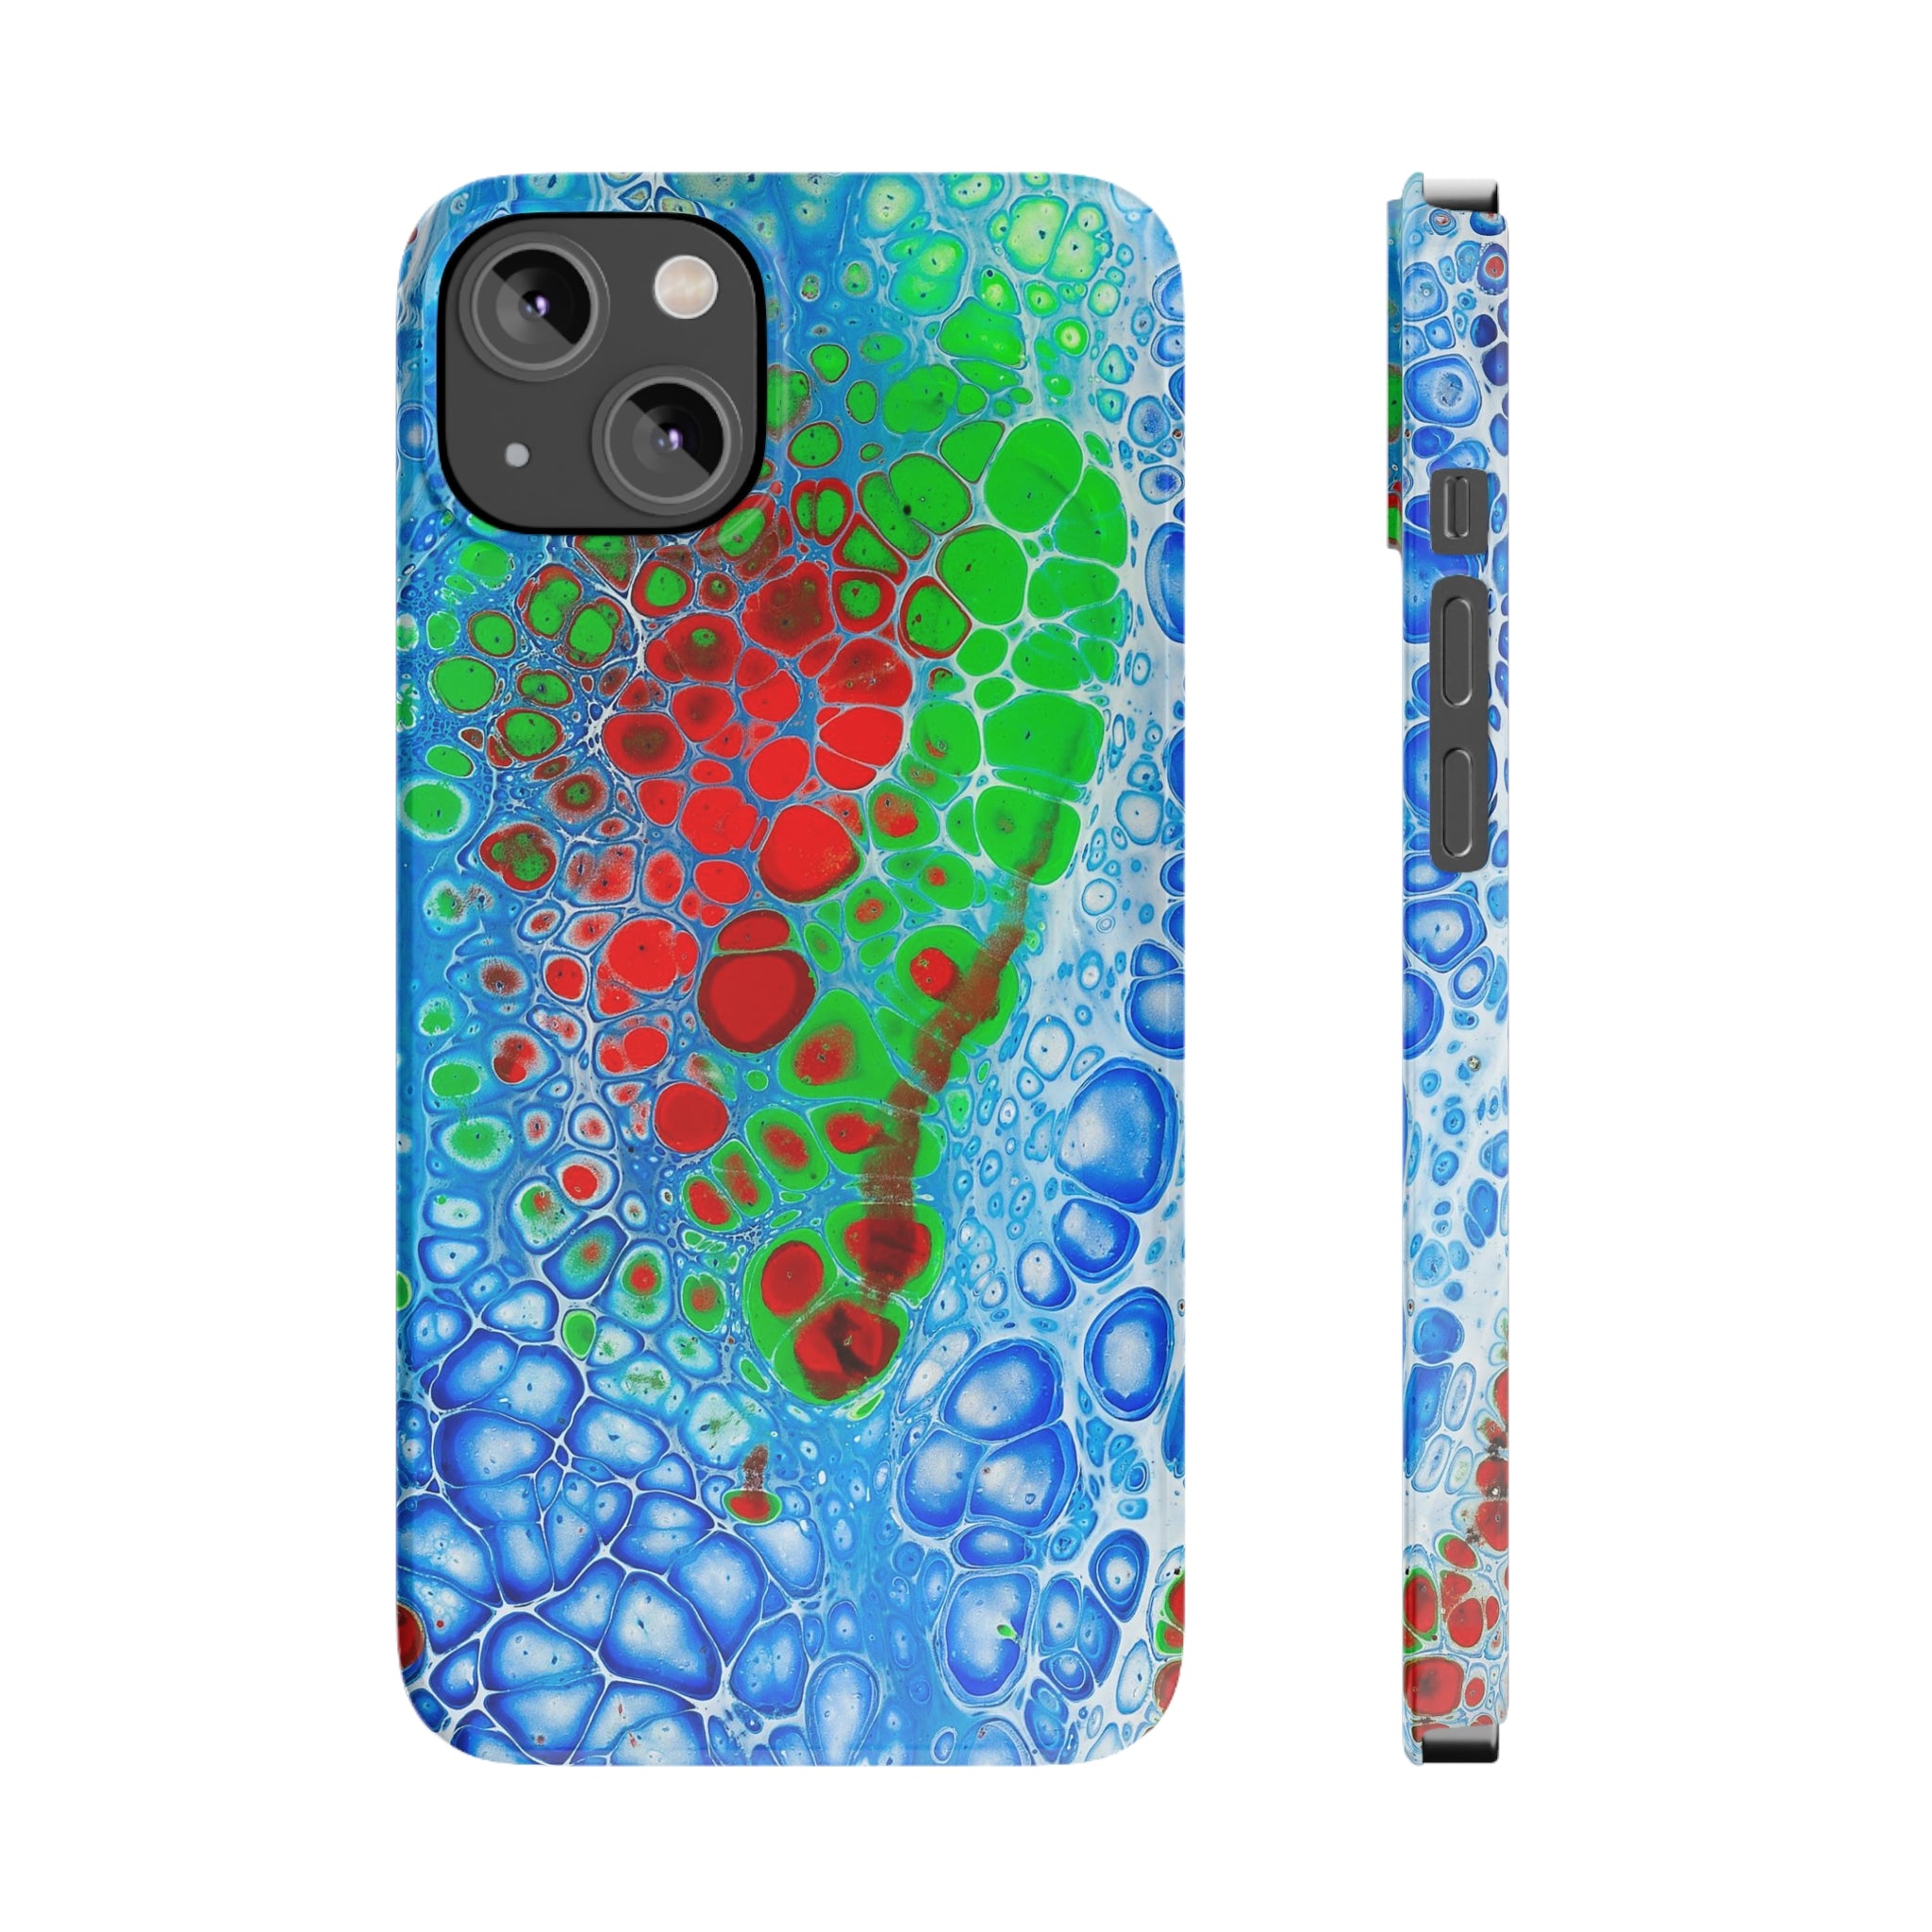 Fluid Bubbles - Slim Phone Cases